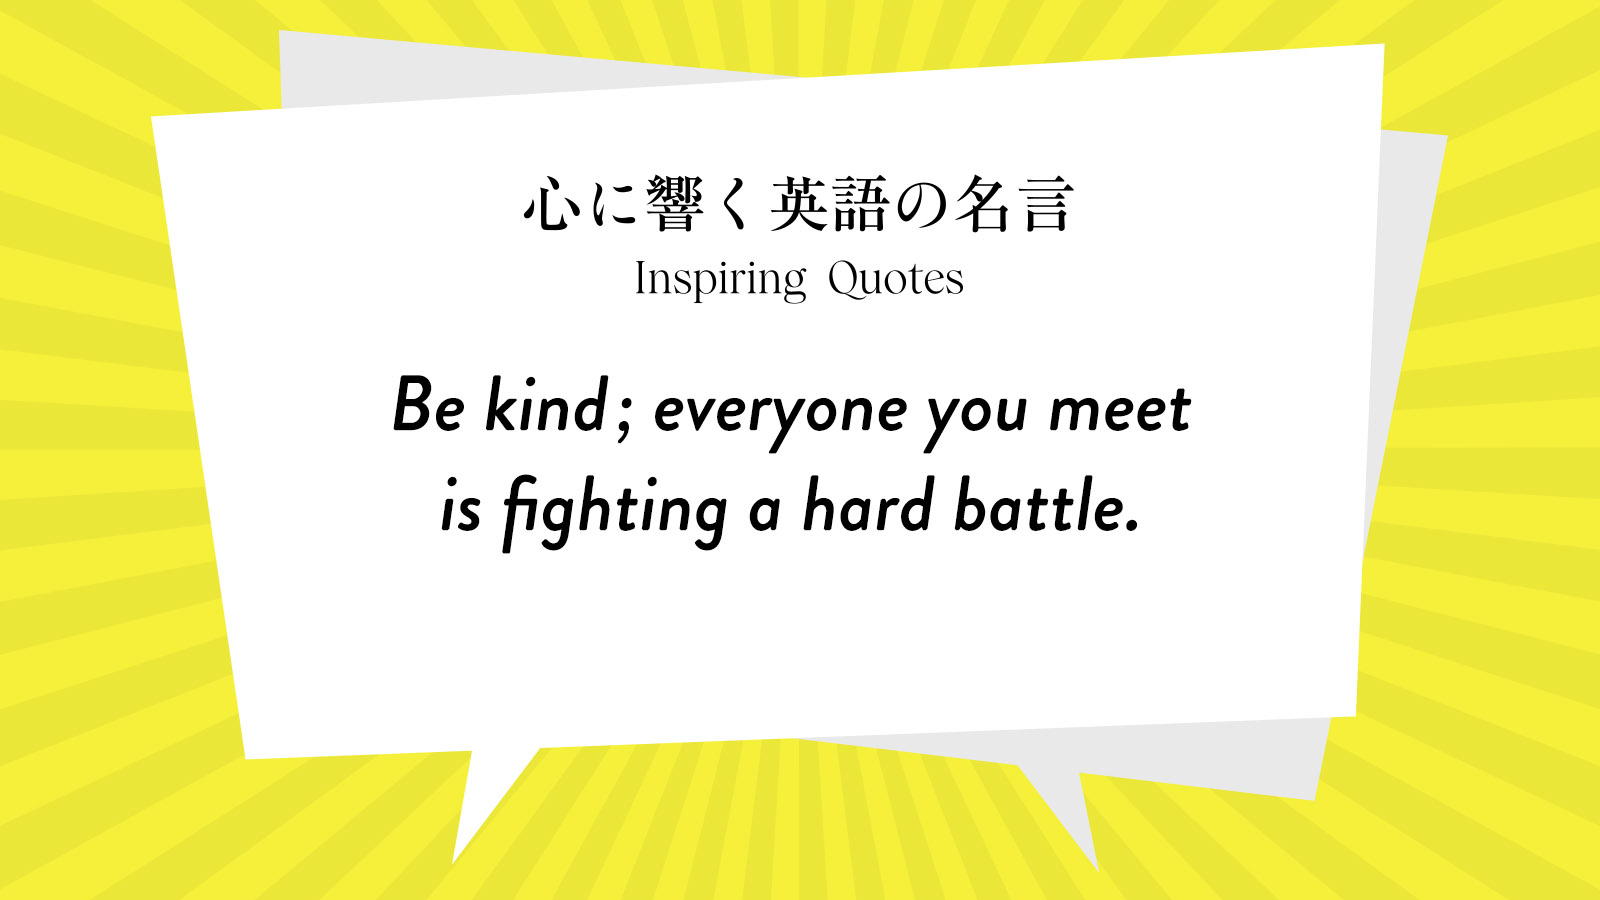 今週の名言 “Be kind; everyone you meet is fighting a hard battle.” | Inspiring Quotes: 心に響く英語の名言